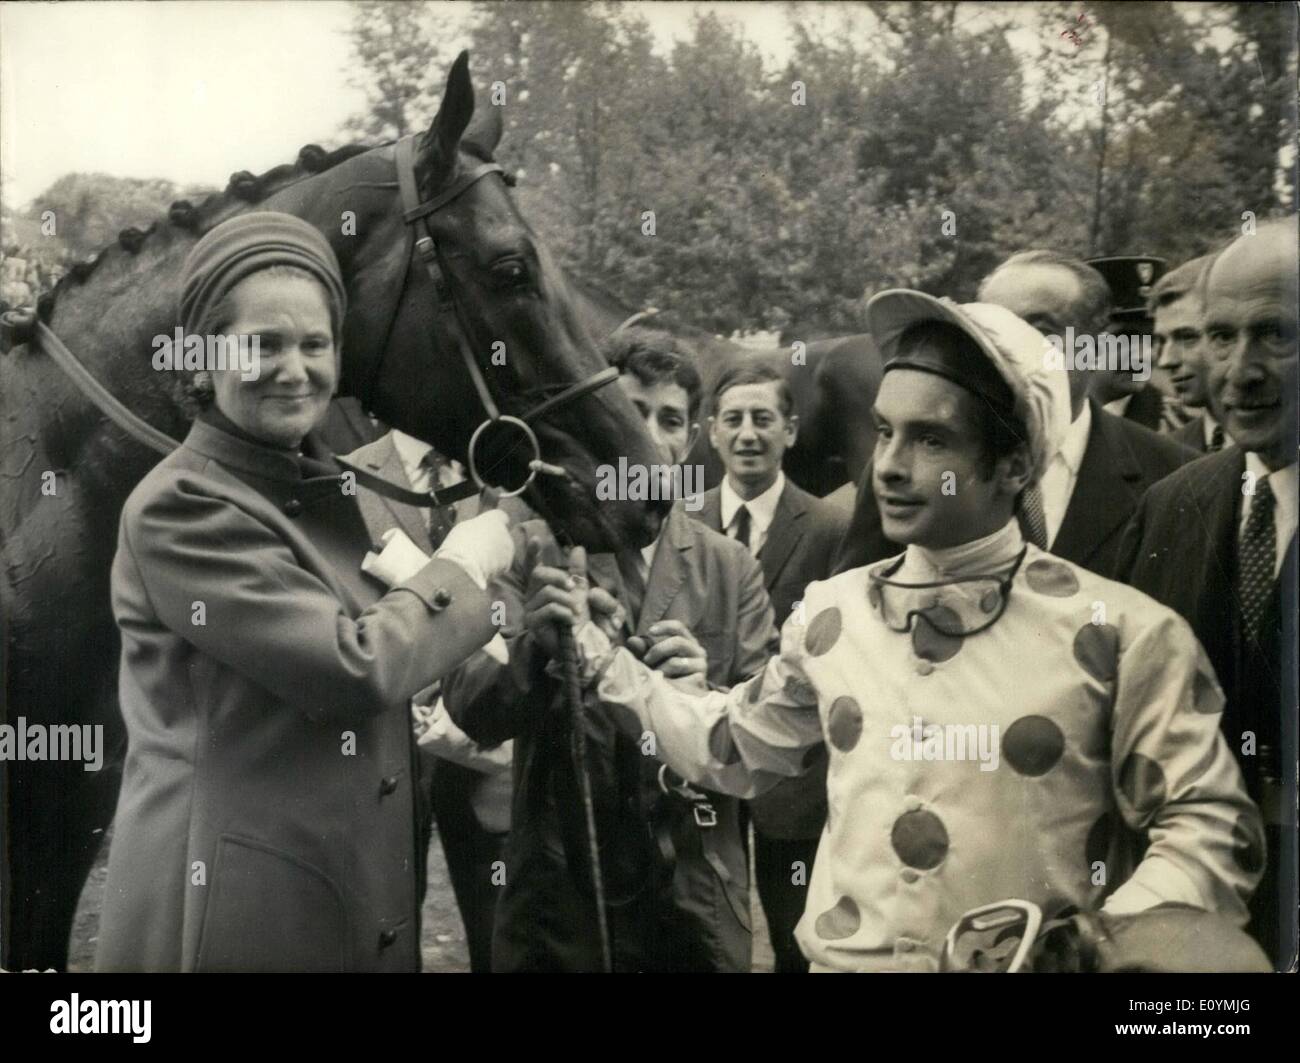 Ottobre 10, 1970 - Ecco una foto del cavallo che ha vinto la Longchamp cavallo di razza "assafras'' con il suo fantino Yves St-Martin e il suo proprietario La Sig.ra Arpad Plesch. Il prof. Heuss, il dott. A.H. Comton, e il dottor Carl J. Burckhardt Foto Stock